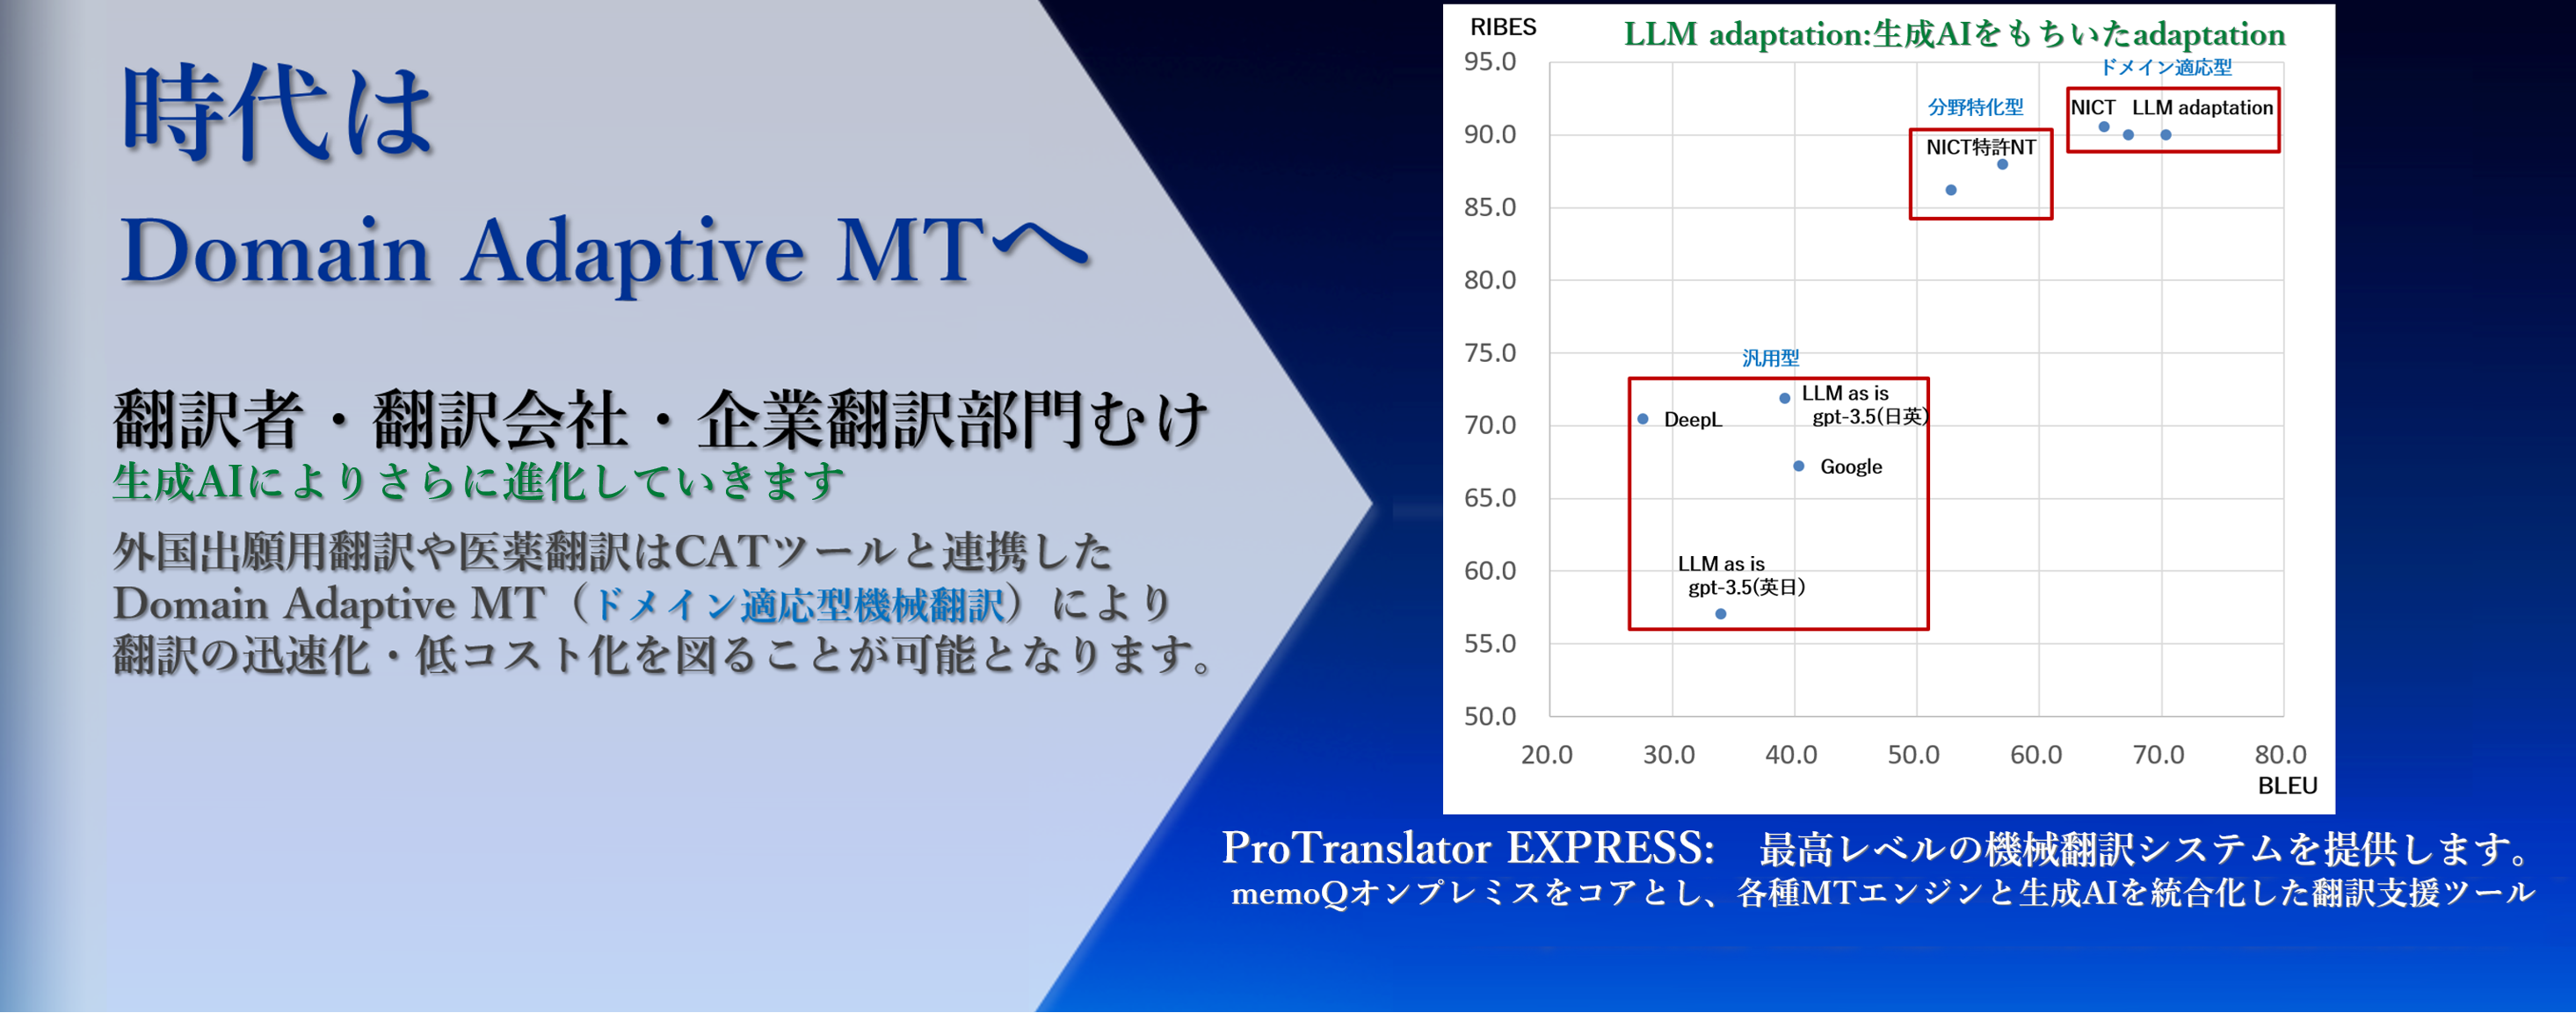 日本特許翻訳株式会社 - npat｜最高レベルの機械翻訳システムを提供 